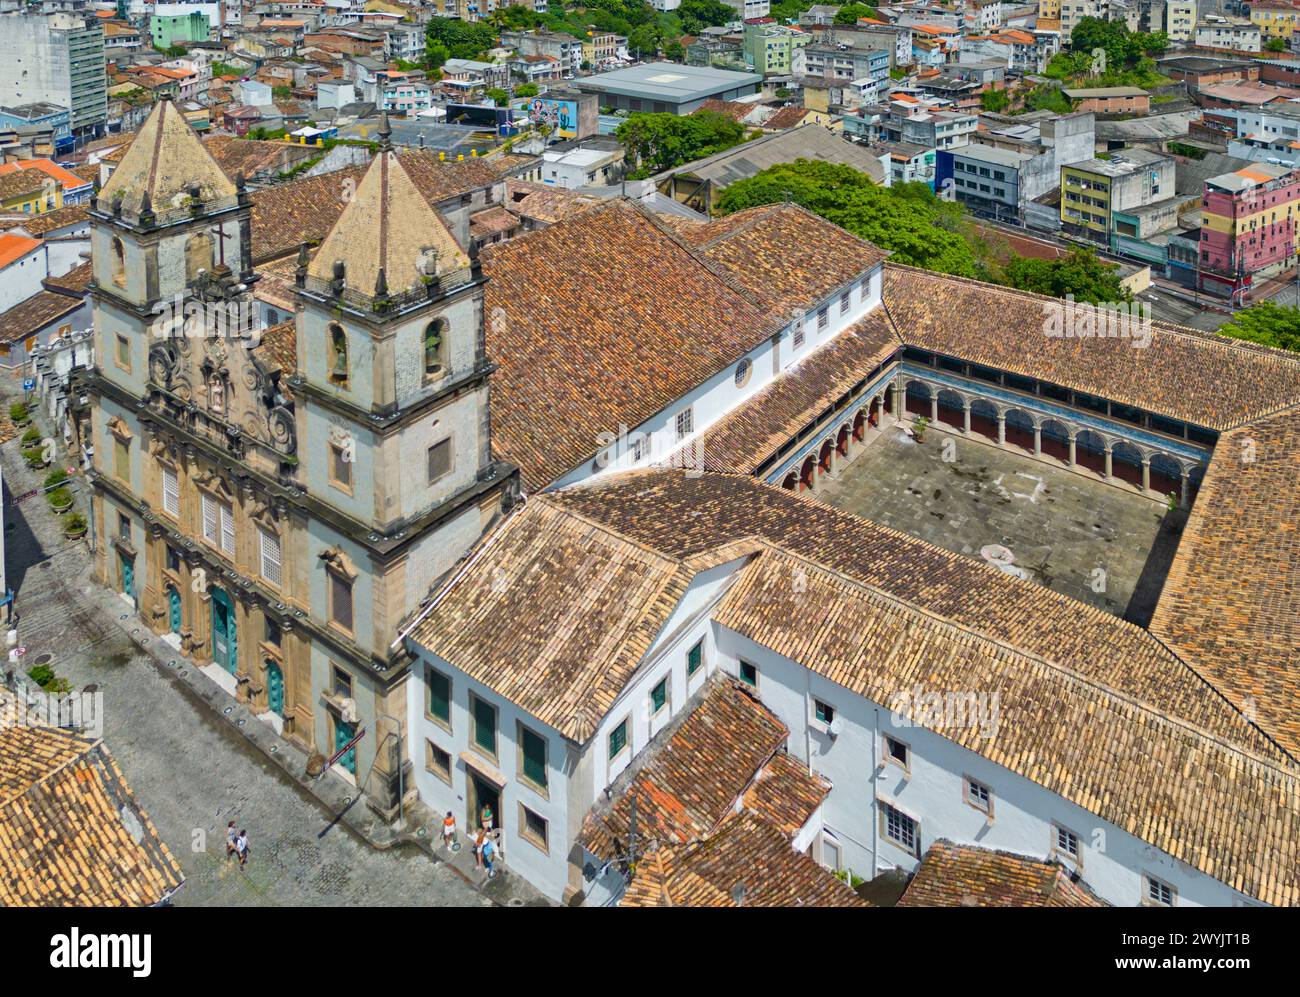 Brésil, état de Bahia, Salvador, centre historique inscrit au patrimoine mondial de l'UNESCO, quartier Pelourinho, l'église et le monastère de Sao Francisco ordre (vue aérienne) Banque D'Images